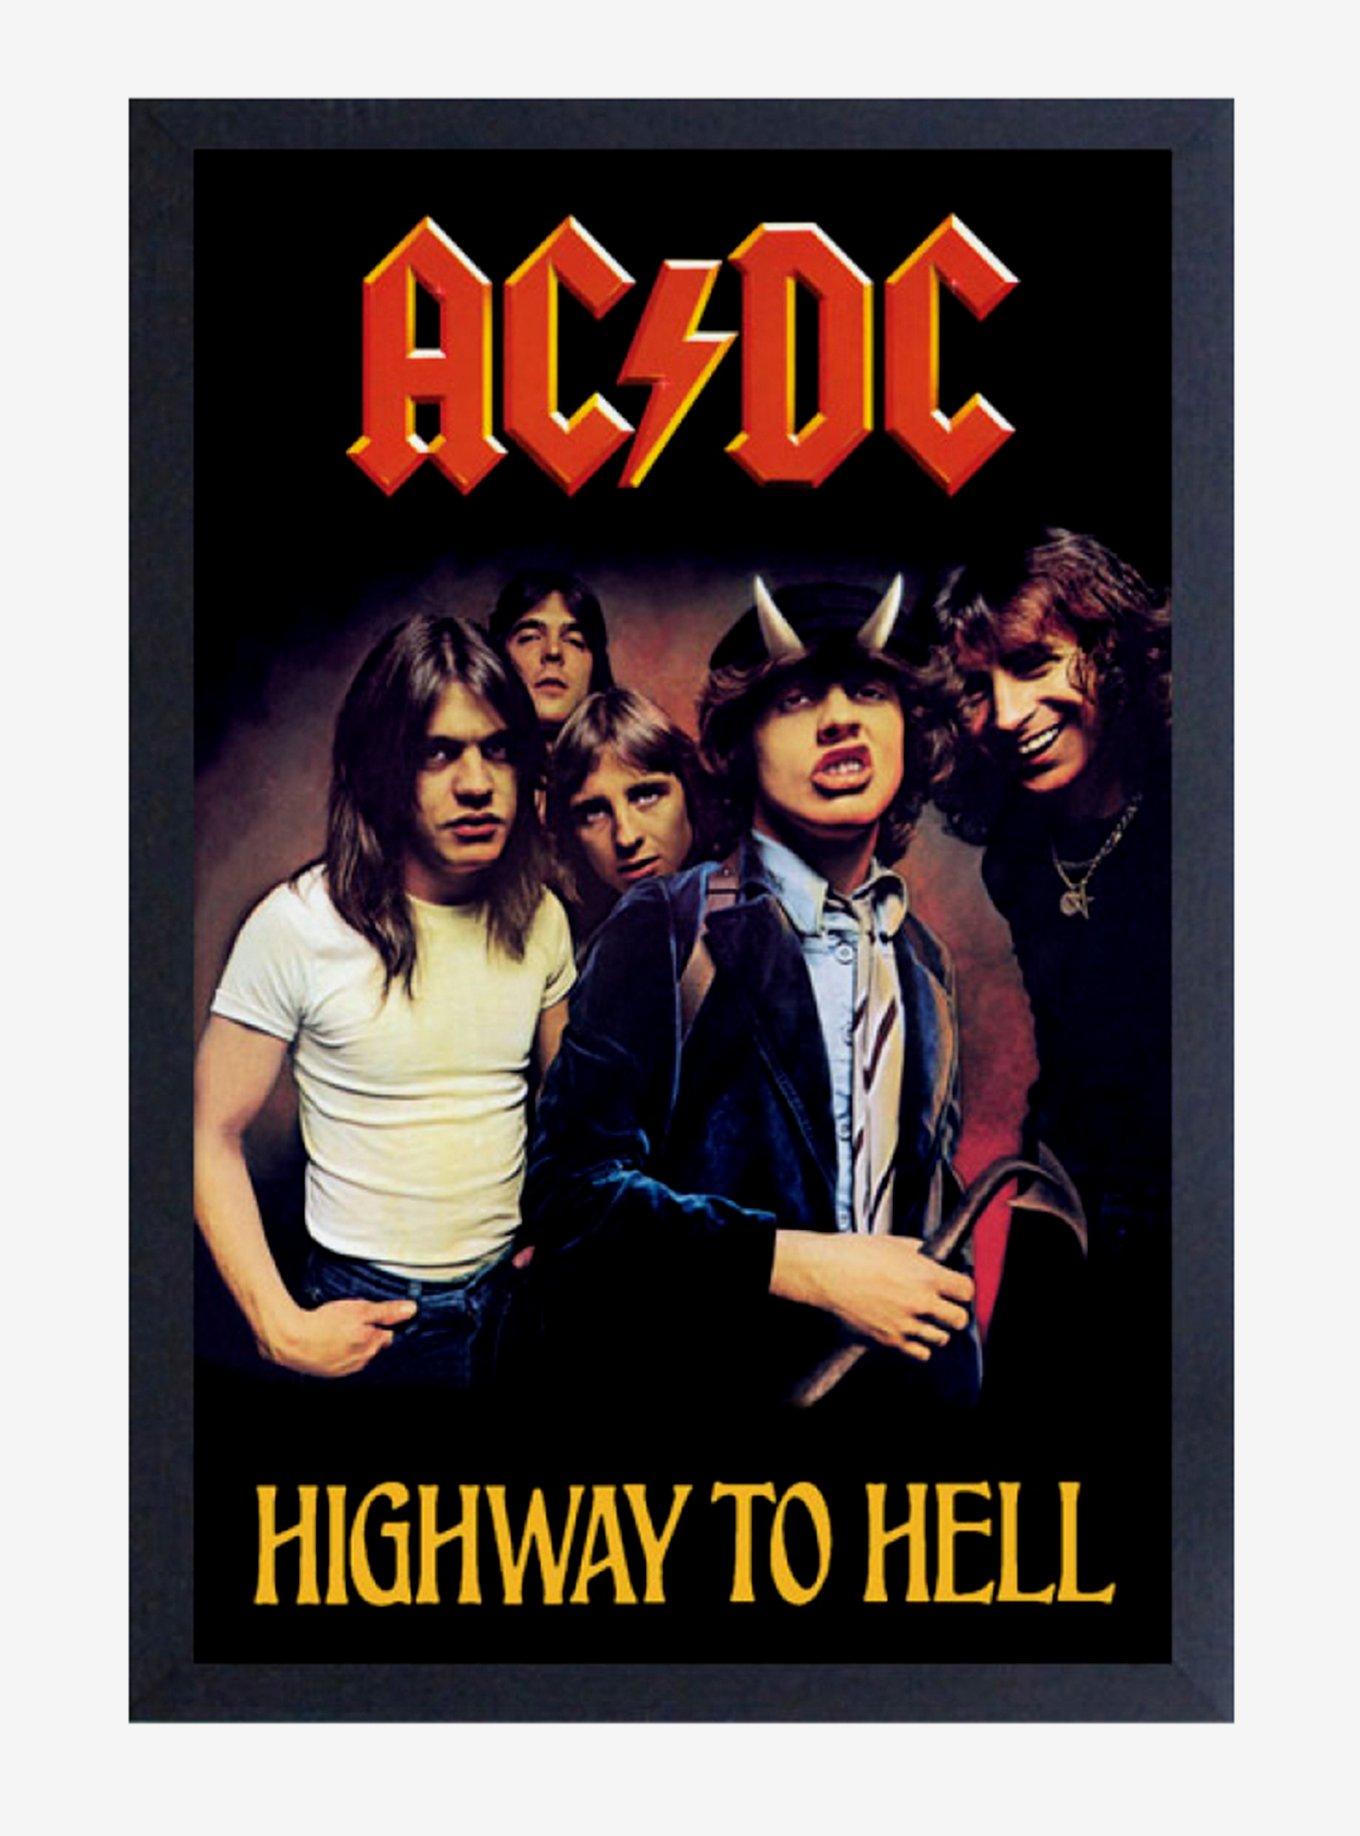 Acdc highway to hell. AC DC Highway to Hell 1979. AC DC Highway to Hell обложка. AC DC Постер. AC DC Highway to Hell альбом.